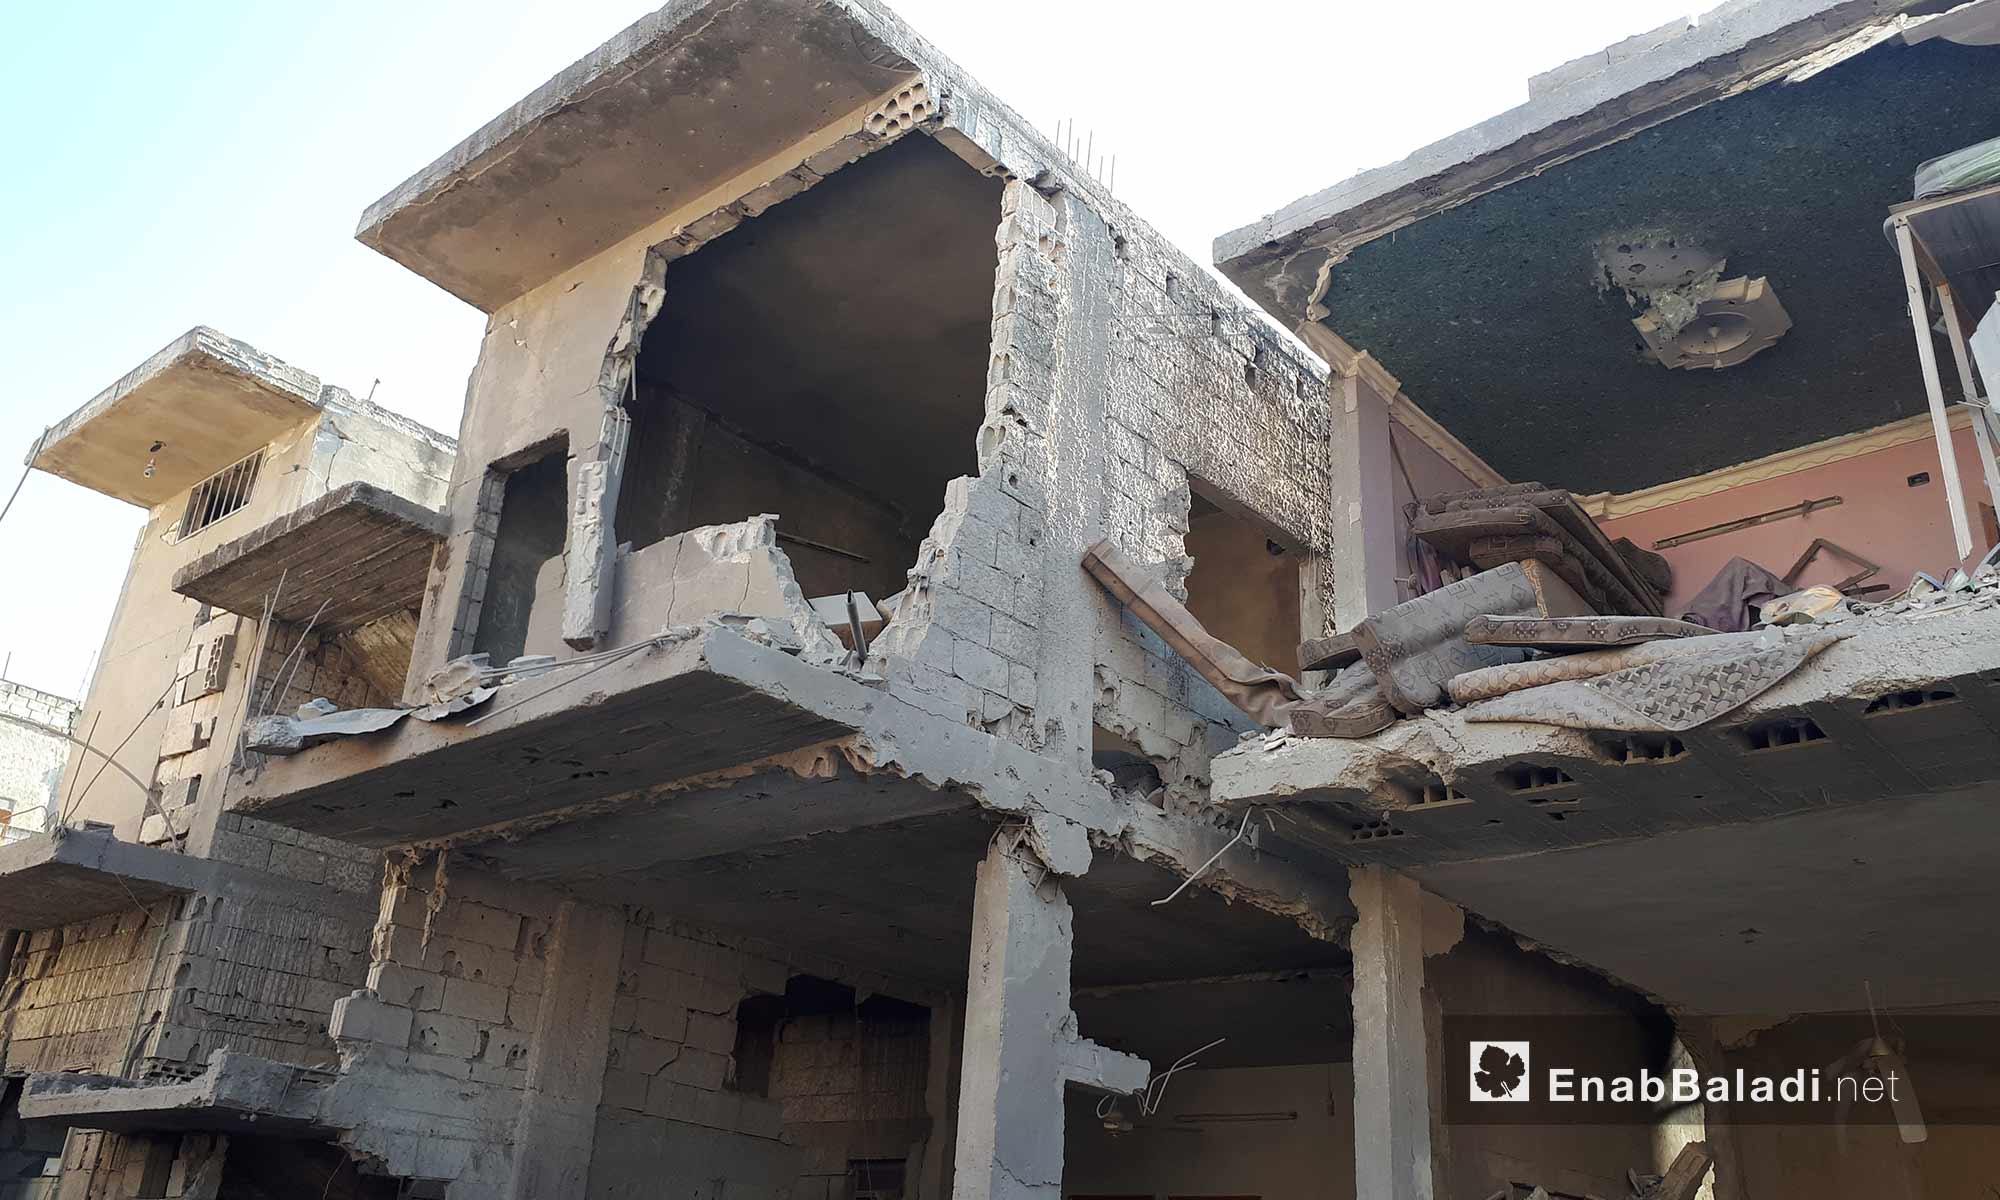 الدمار الذي خلفه قصف  الطيران الحربي لمدينة الحولة بريف حمص الشمالي - 22 آب 2017 (عنب بلدي)